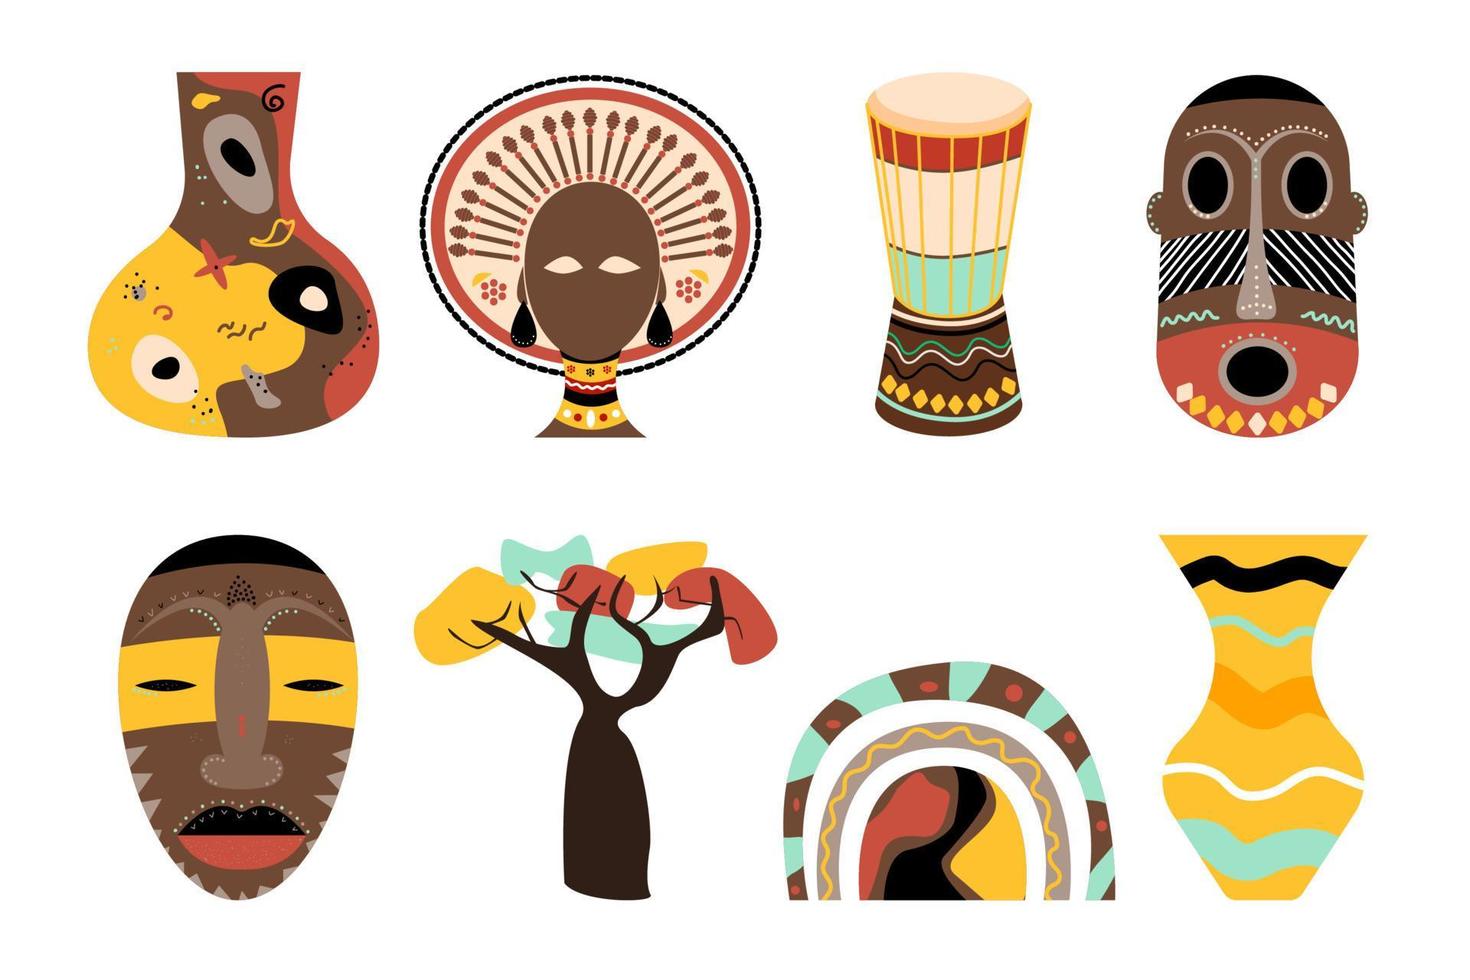 concetto etnico africano con maschera tribale, baobab, vasi, tamburo, donna africana e brillante rainbowheme. set di oggetti africani. illustrazione vettoriale